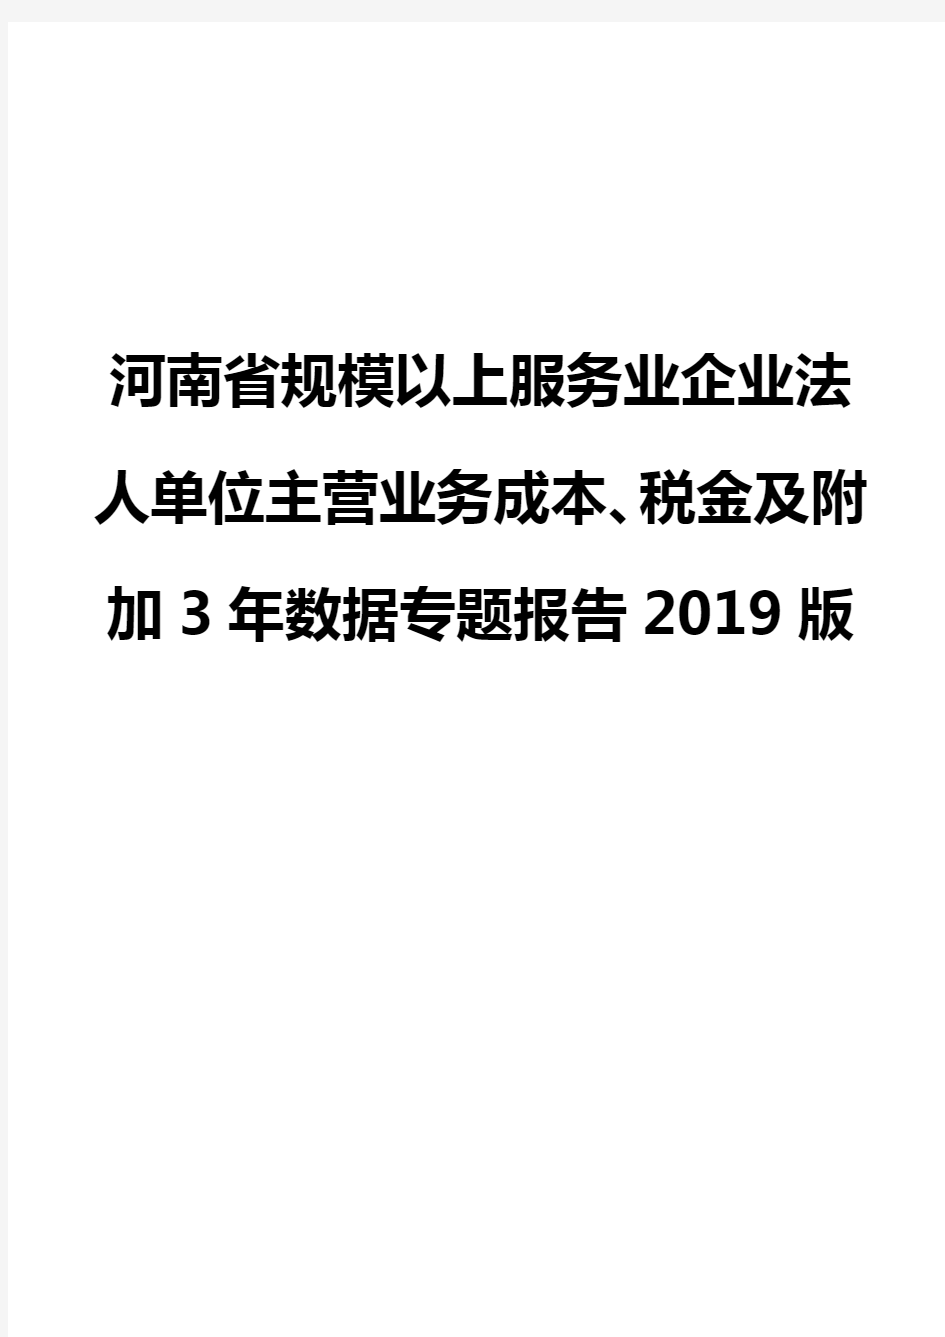 河南省规模以上服务业企业法人单位主营业务成本、税金及附加3年数据专题报告2019版